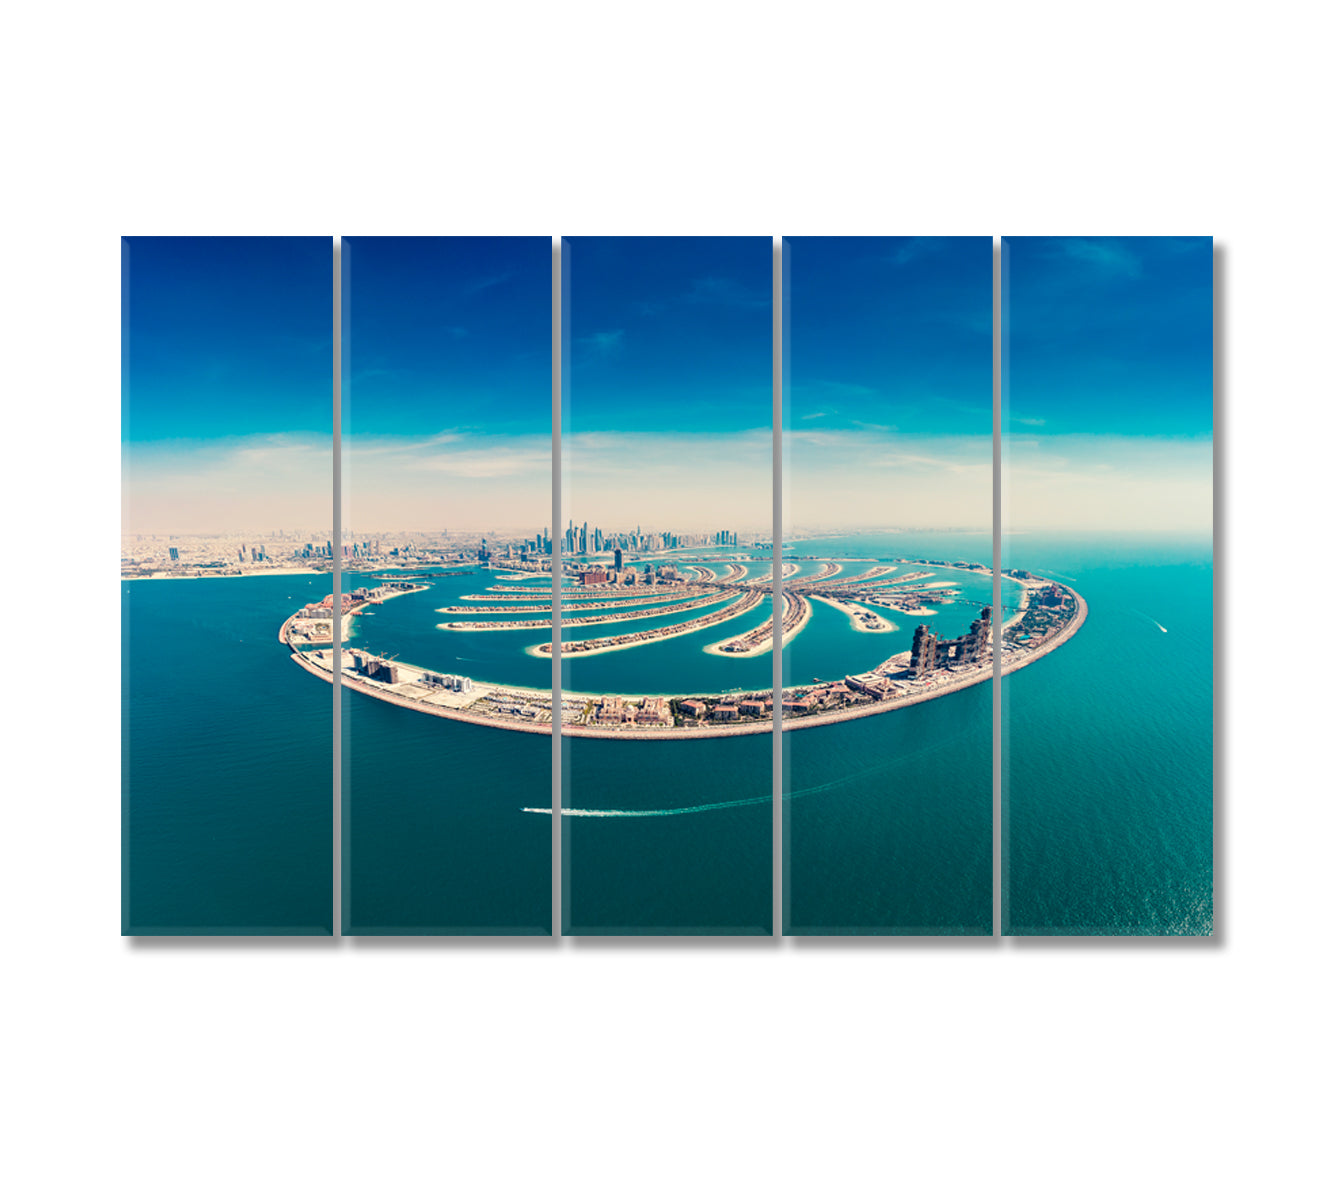 Palm Jumeirah Island in Dubai UAE Canvas Print-Canvas Print-CetArt-5 Panels-36x24 inches-CetArt